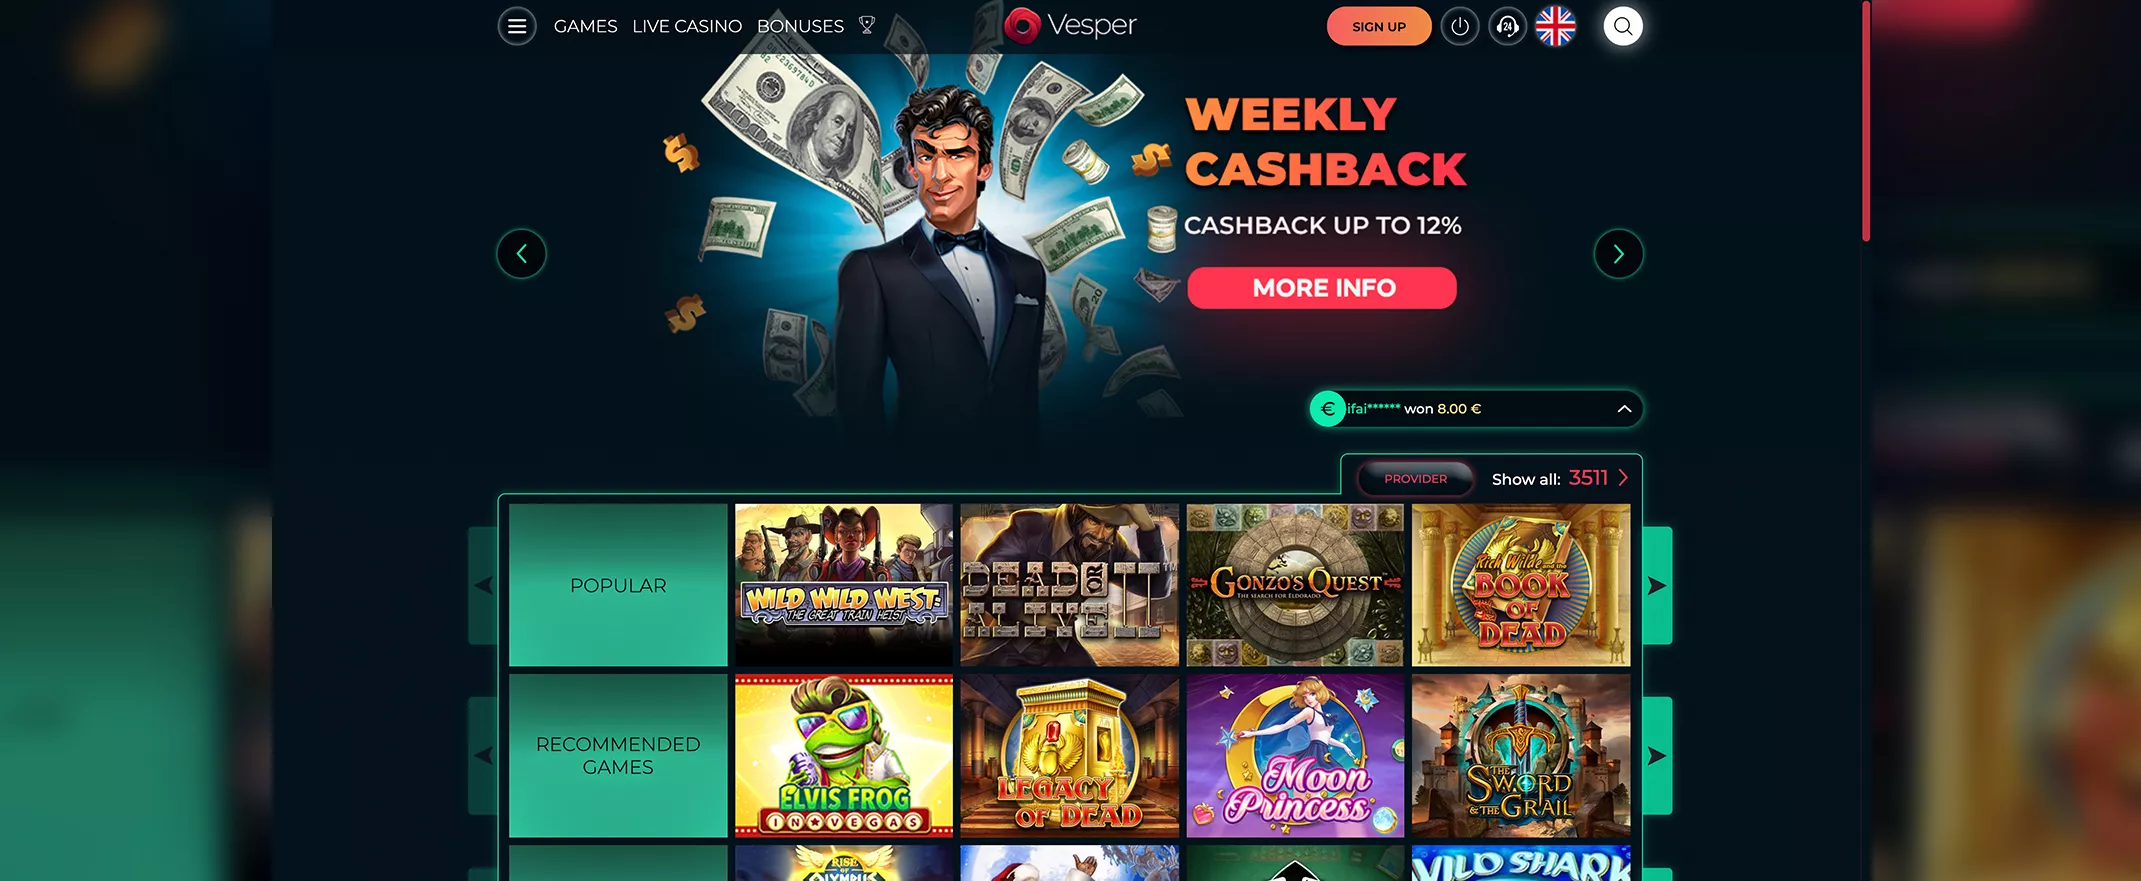 Vesper Casino screenshot of the homepage